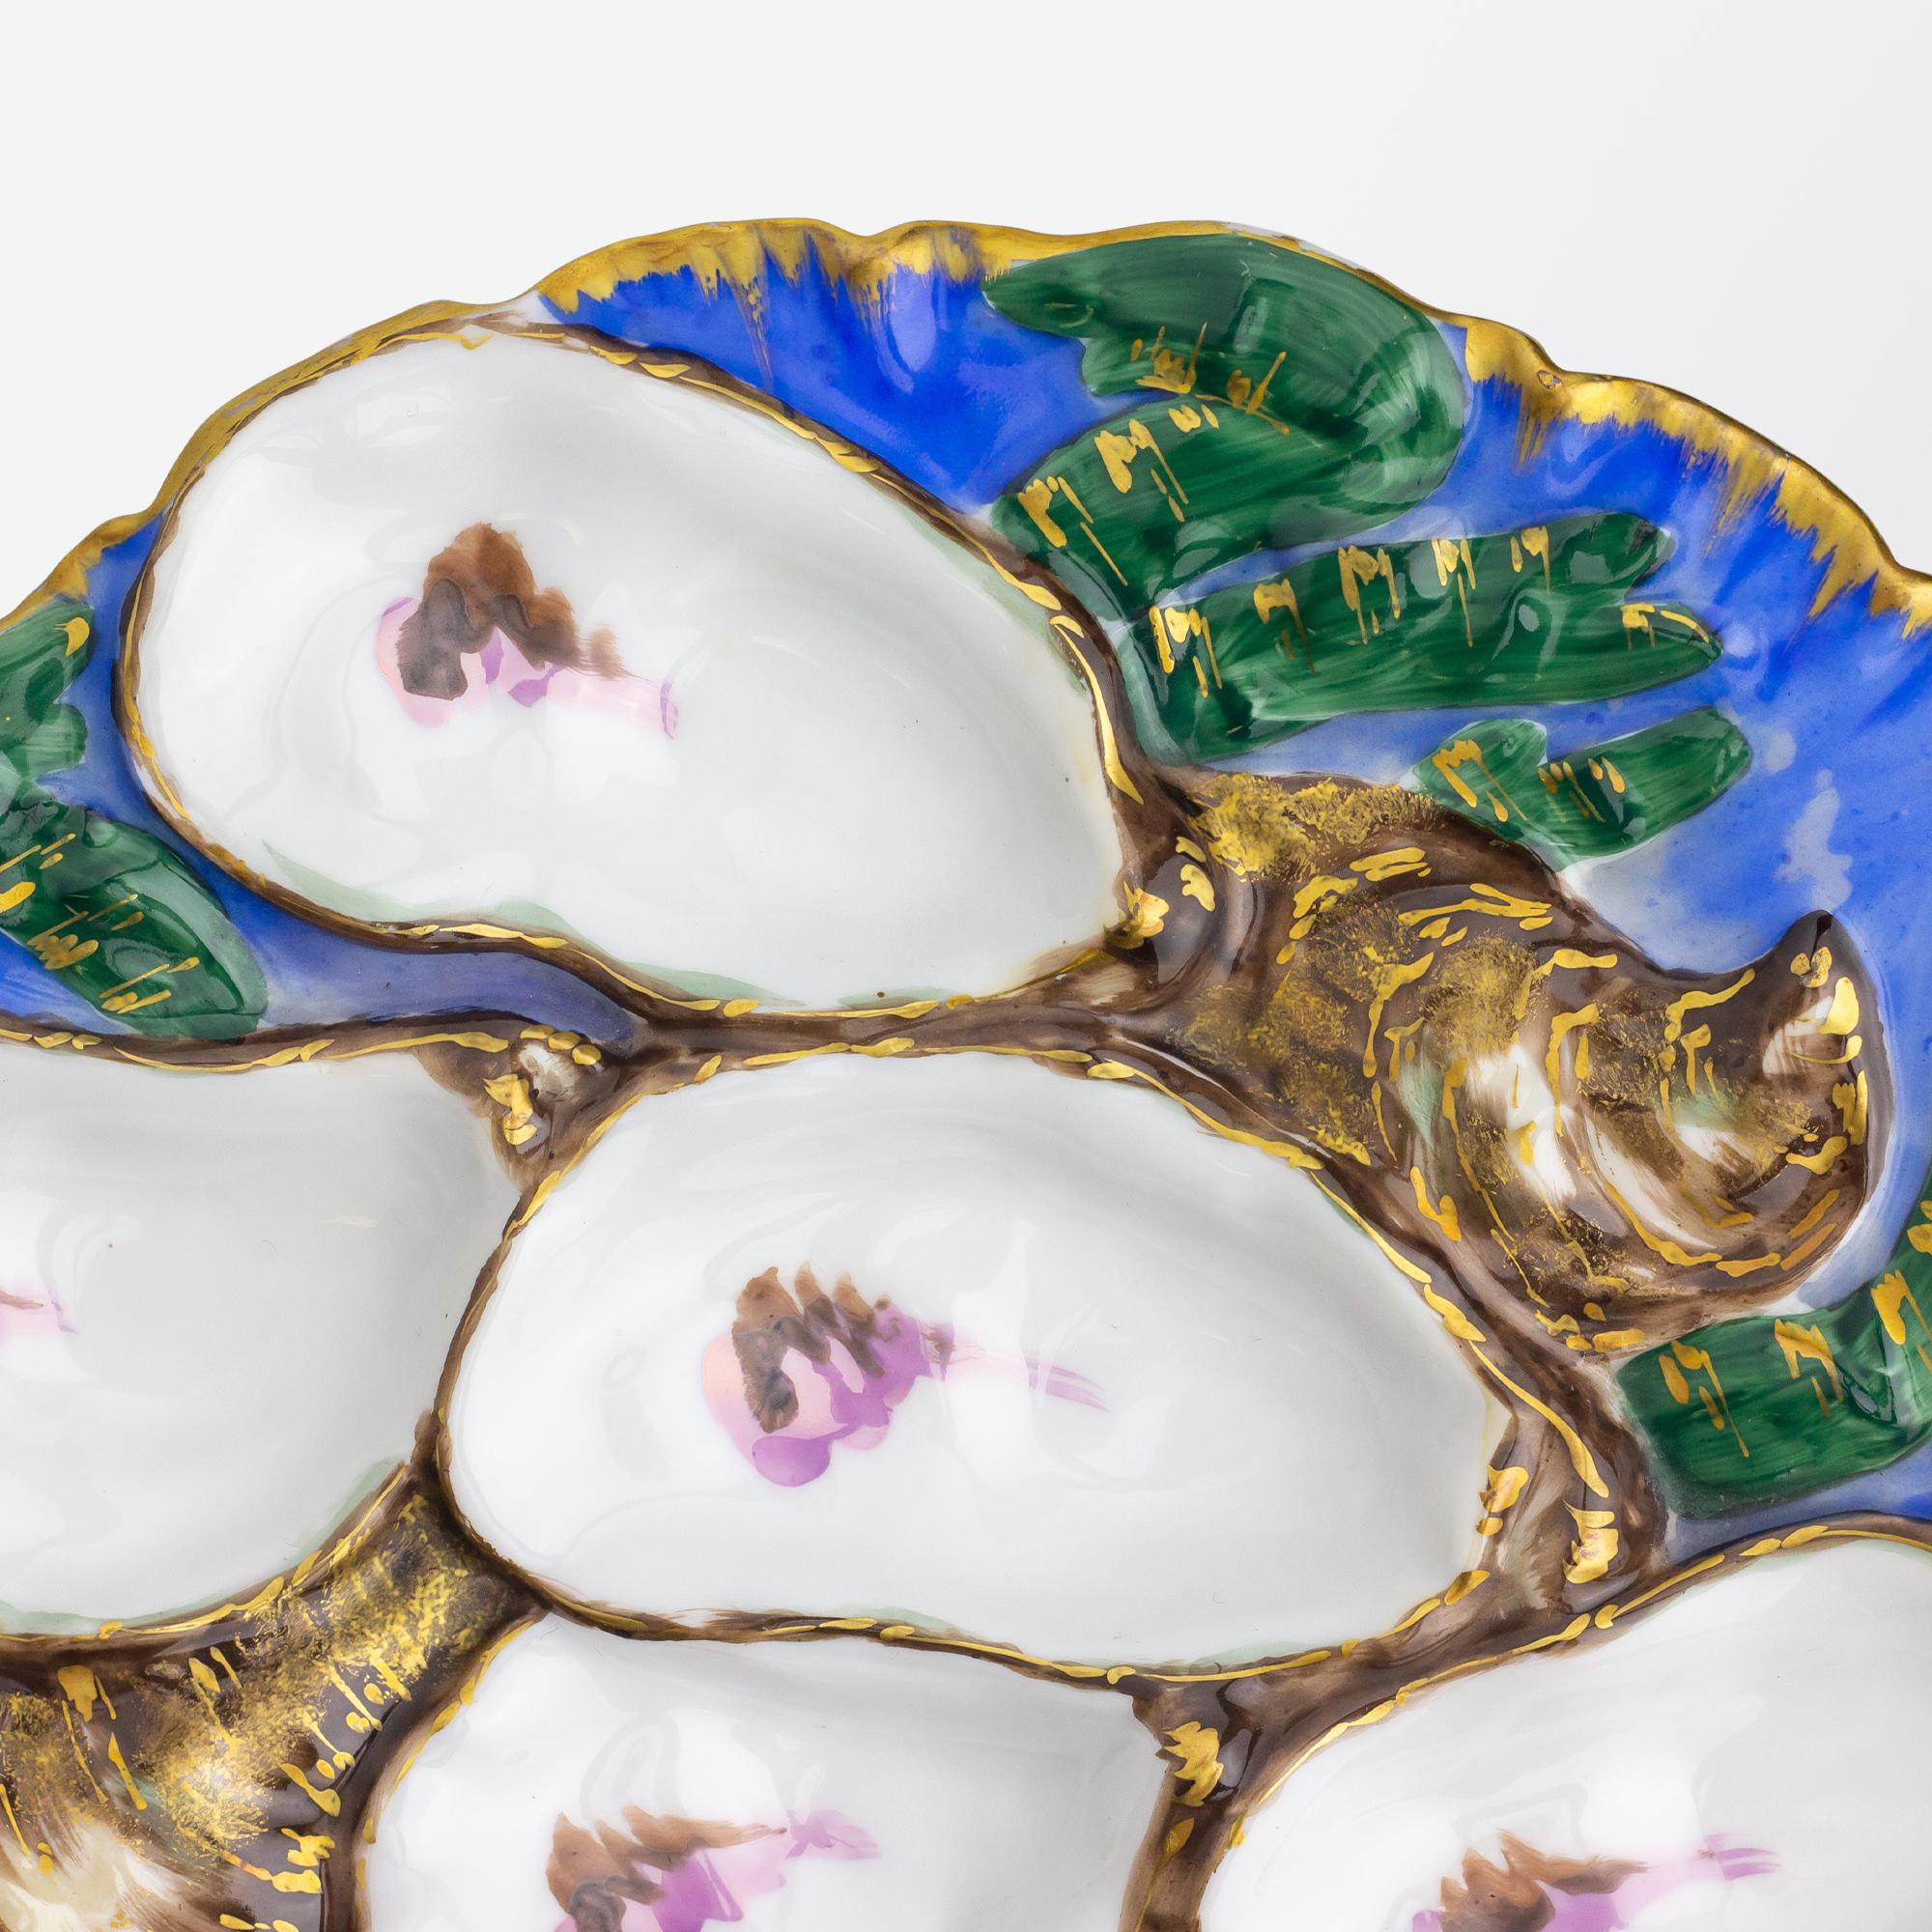 Dieser ungewöhnliche Austernteller aus Porzellan stammt aus den 1880er Jahren und wurde in Limoges nach einem Entwurf von Theodore R. Davis für Präsident und Frau Rutherford B. Hayes hergestellt. 1879 wurde bei Haviland & Co aus Limoges in